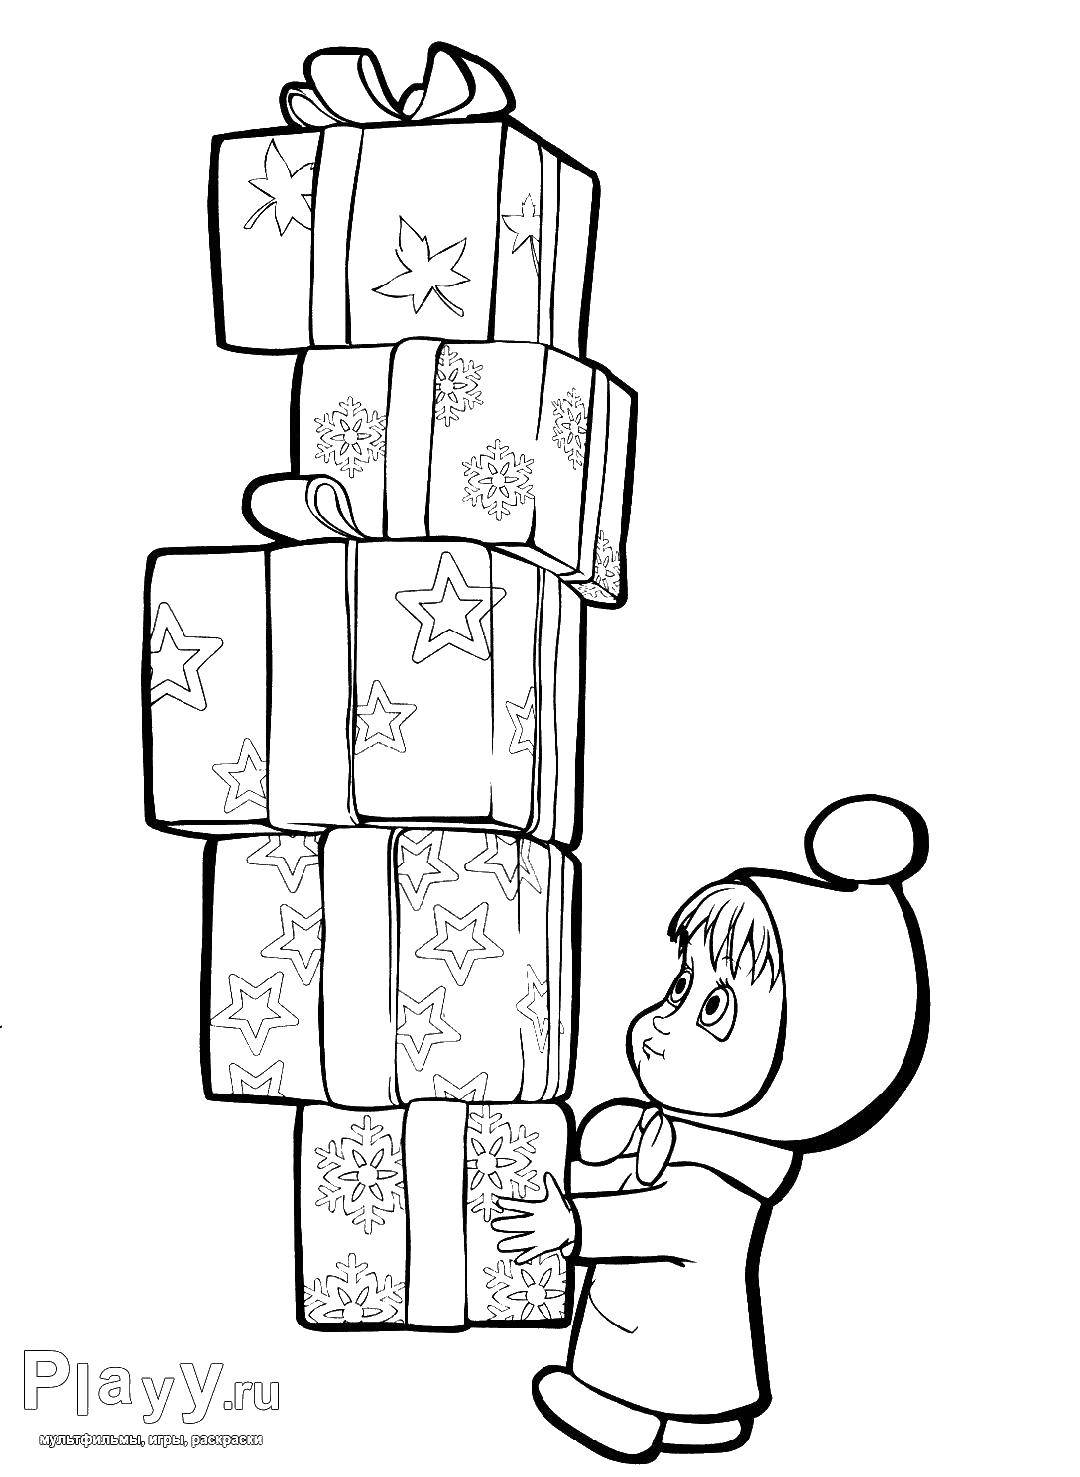 Название: Раскраска Маша с подарками. Категория: маша и медведь. Теги: маша и медведь, мультфильмы, сказки, подарки.